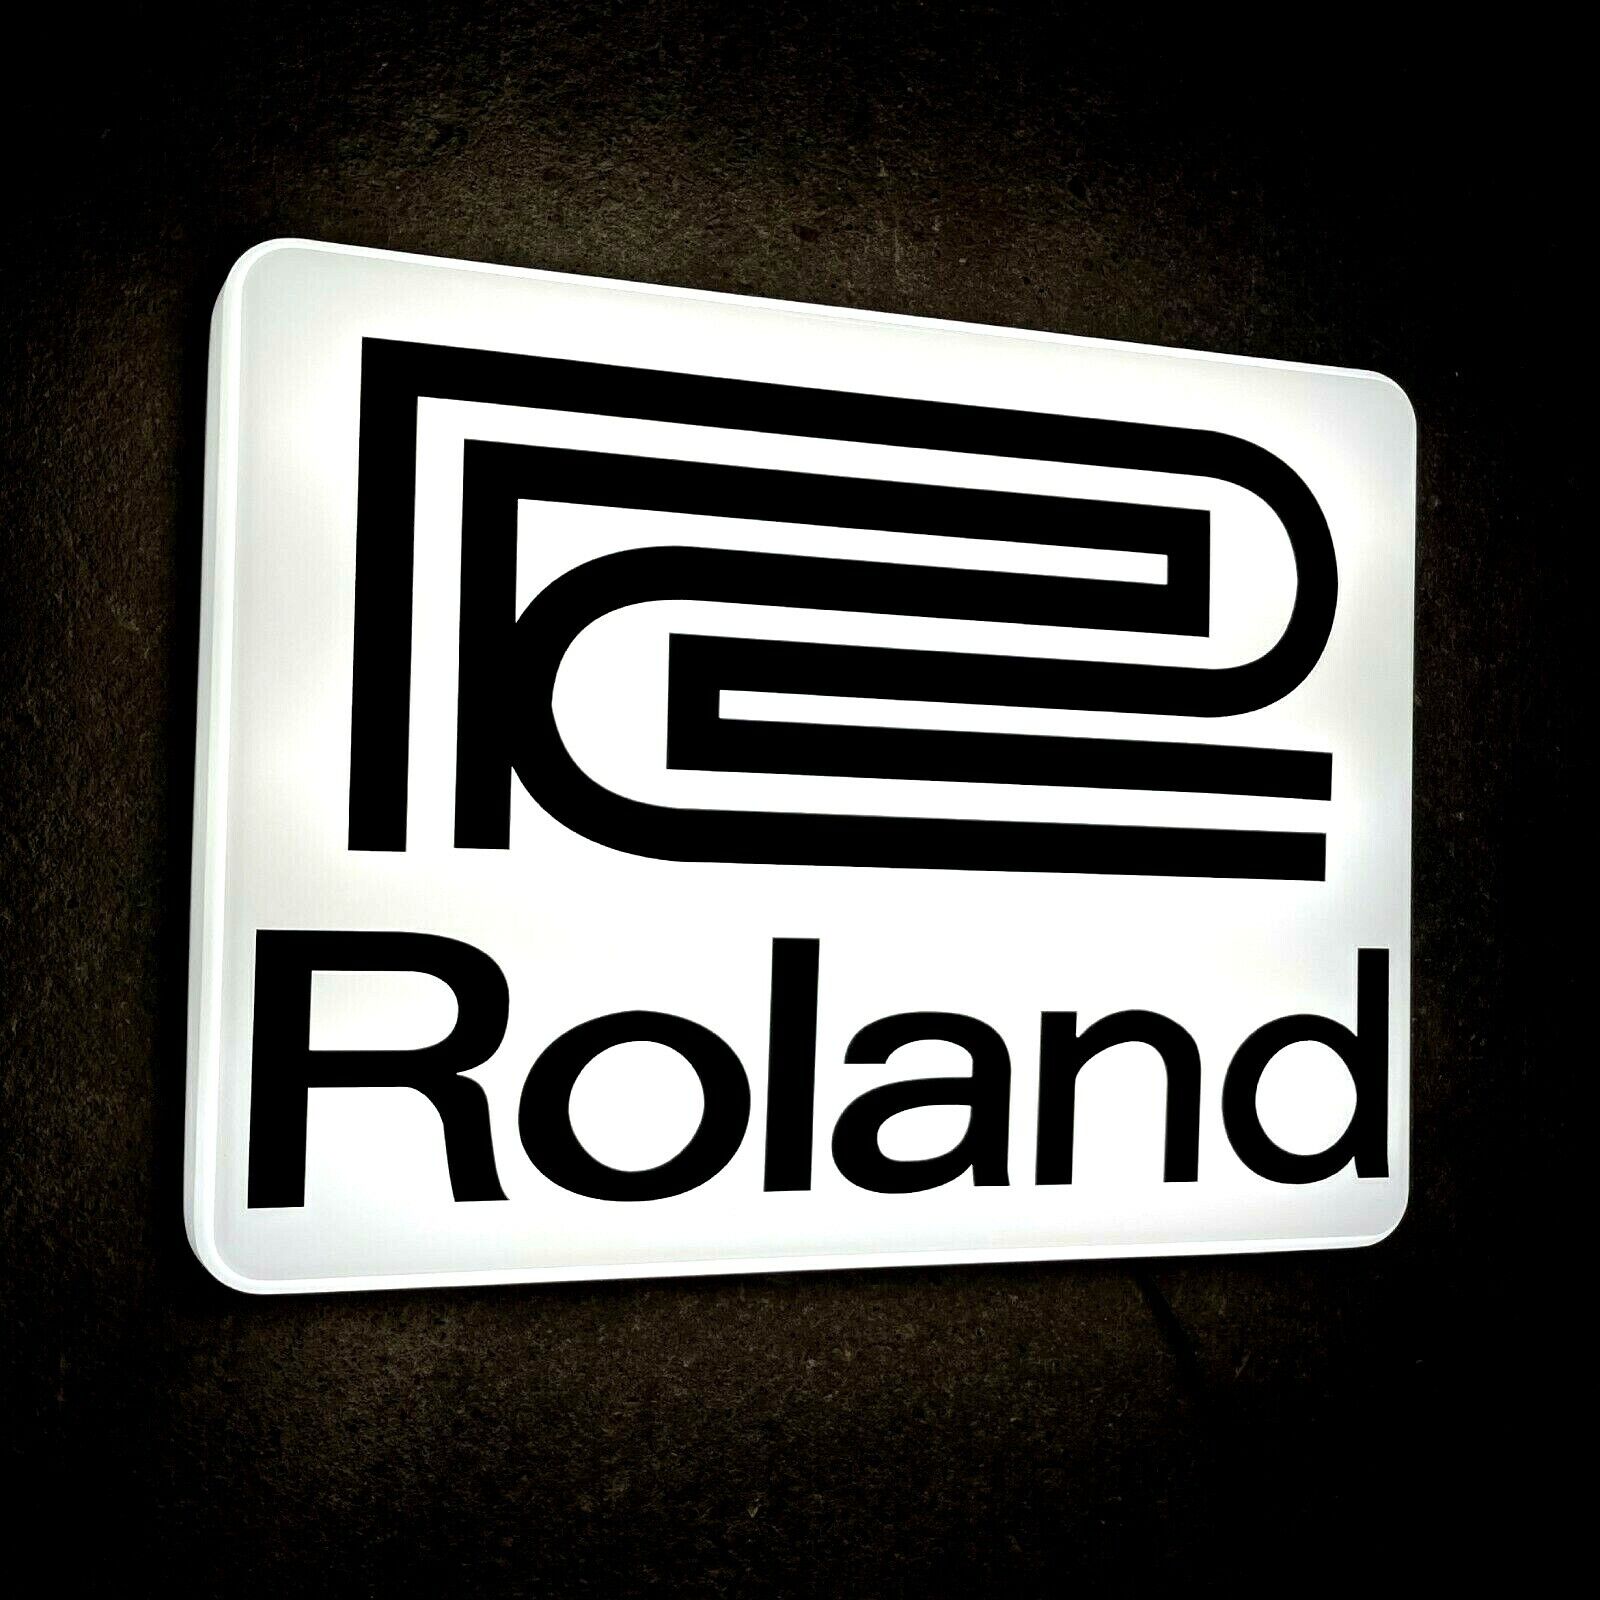 ROLAND LED ILLUMINATED LIGHT UP GARAGE SIGN MUSIC ROOM SYNTHESIZER INSTRUMENT